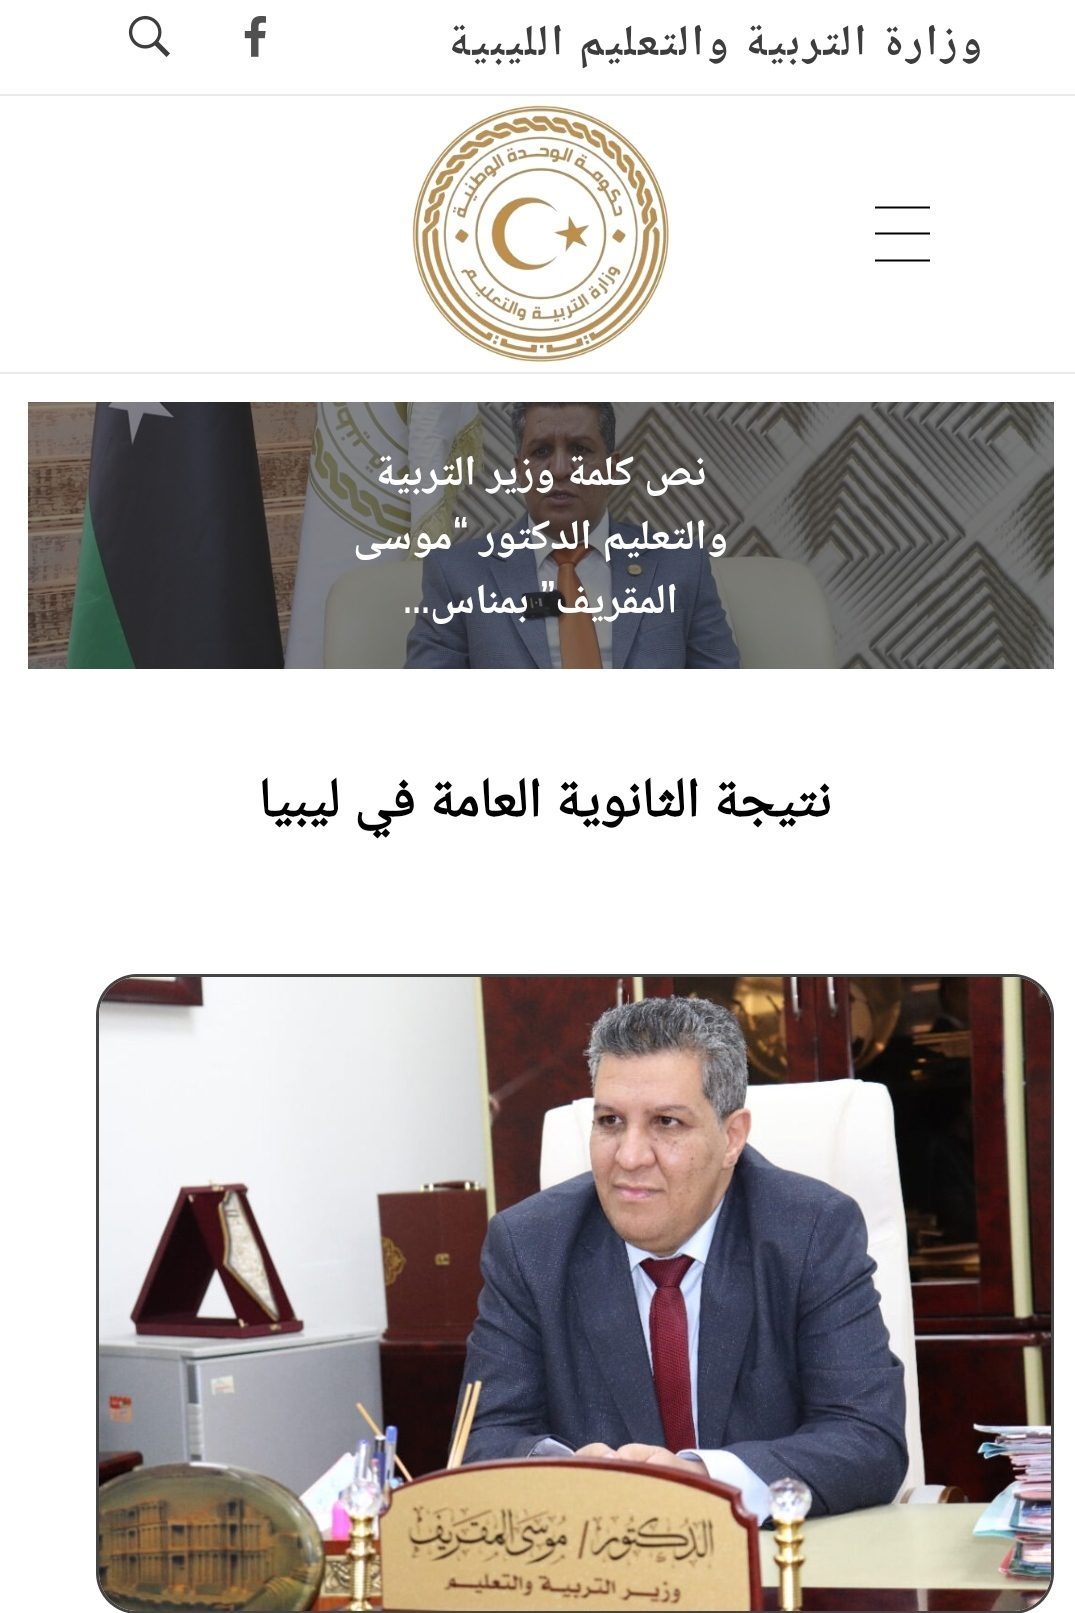 "بالدرجات الان" رابط استعلام نتيجة الشهادة الثانوية الليبية 2022 عبر موقع منظومة الامتحانات الدور الأول